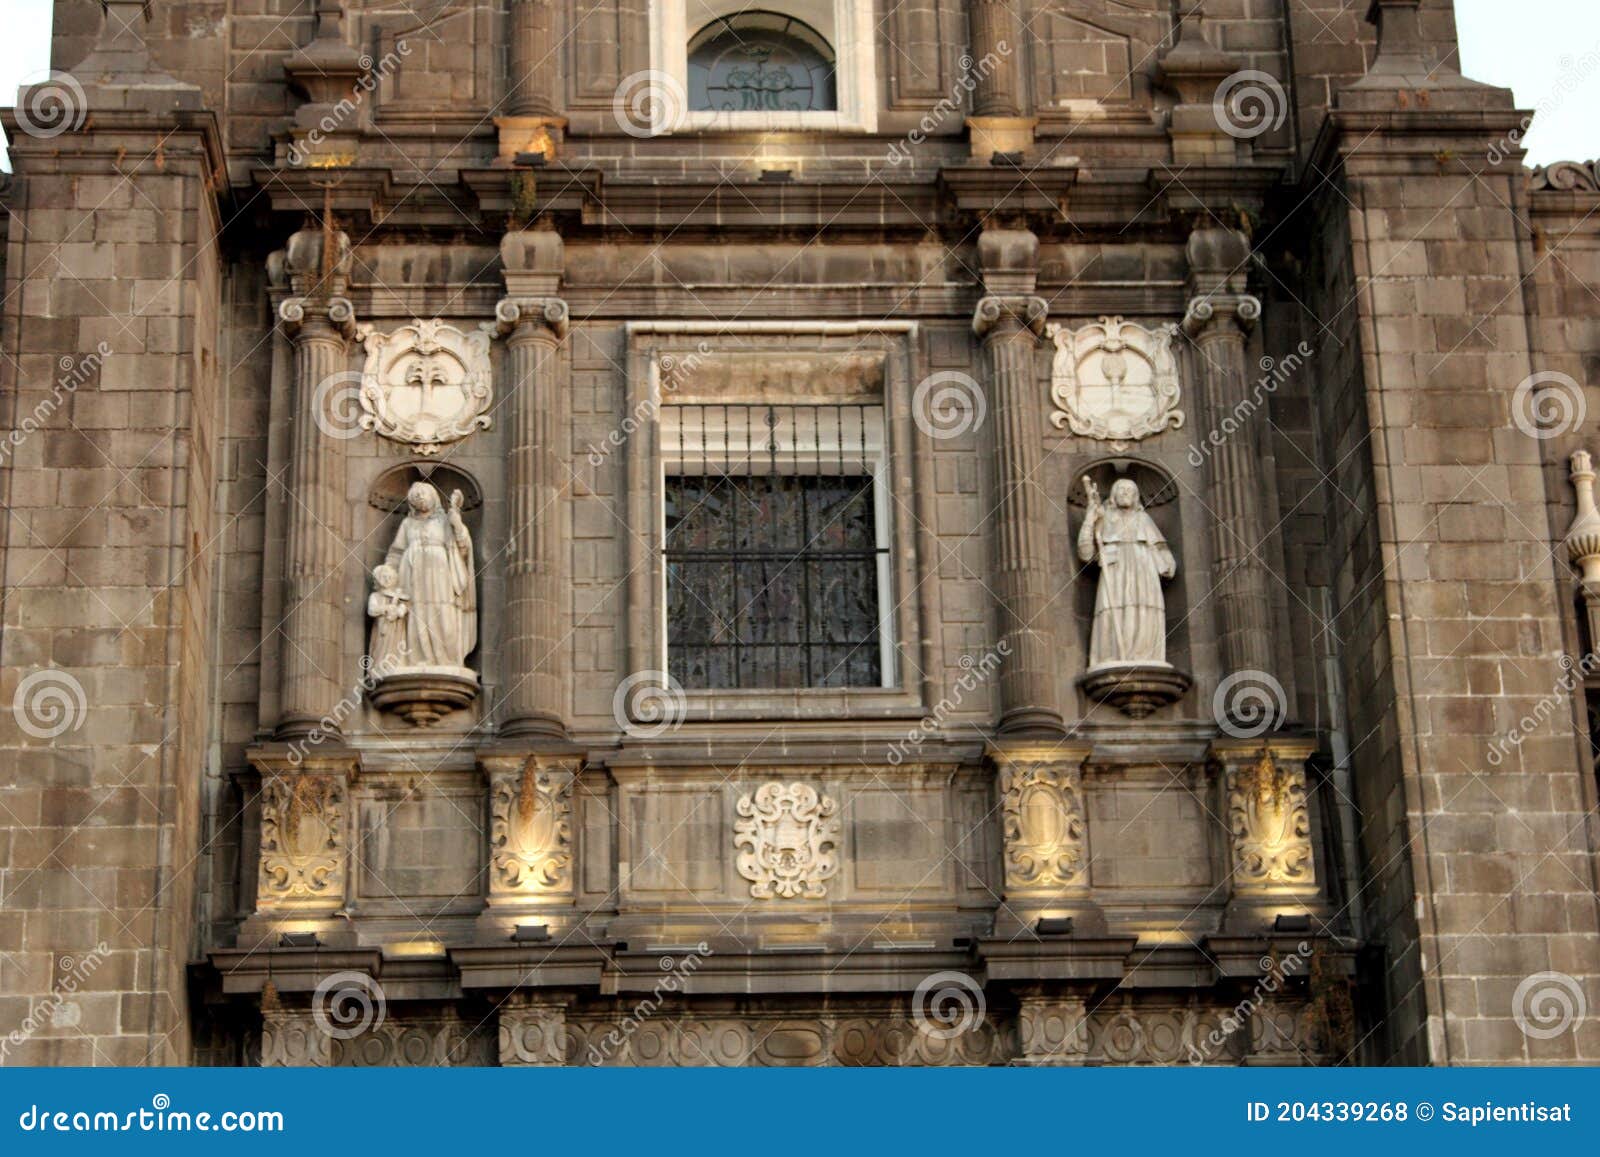 facade of puebla cathedral in puebla city, mexico